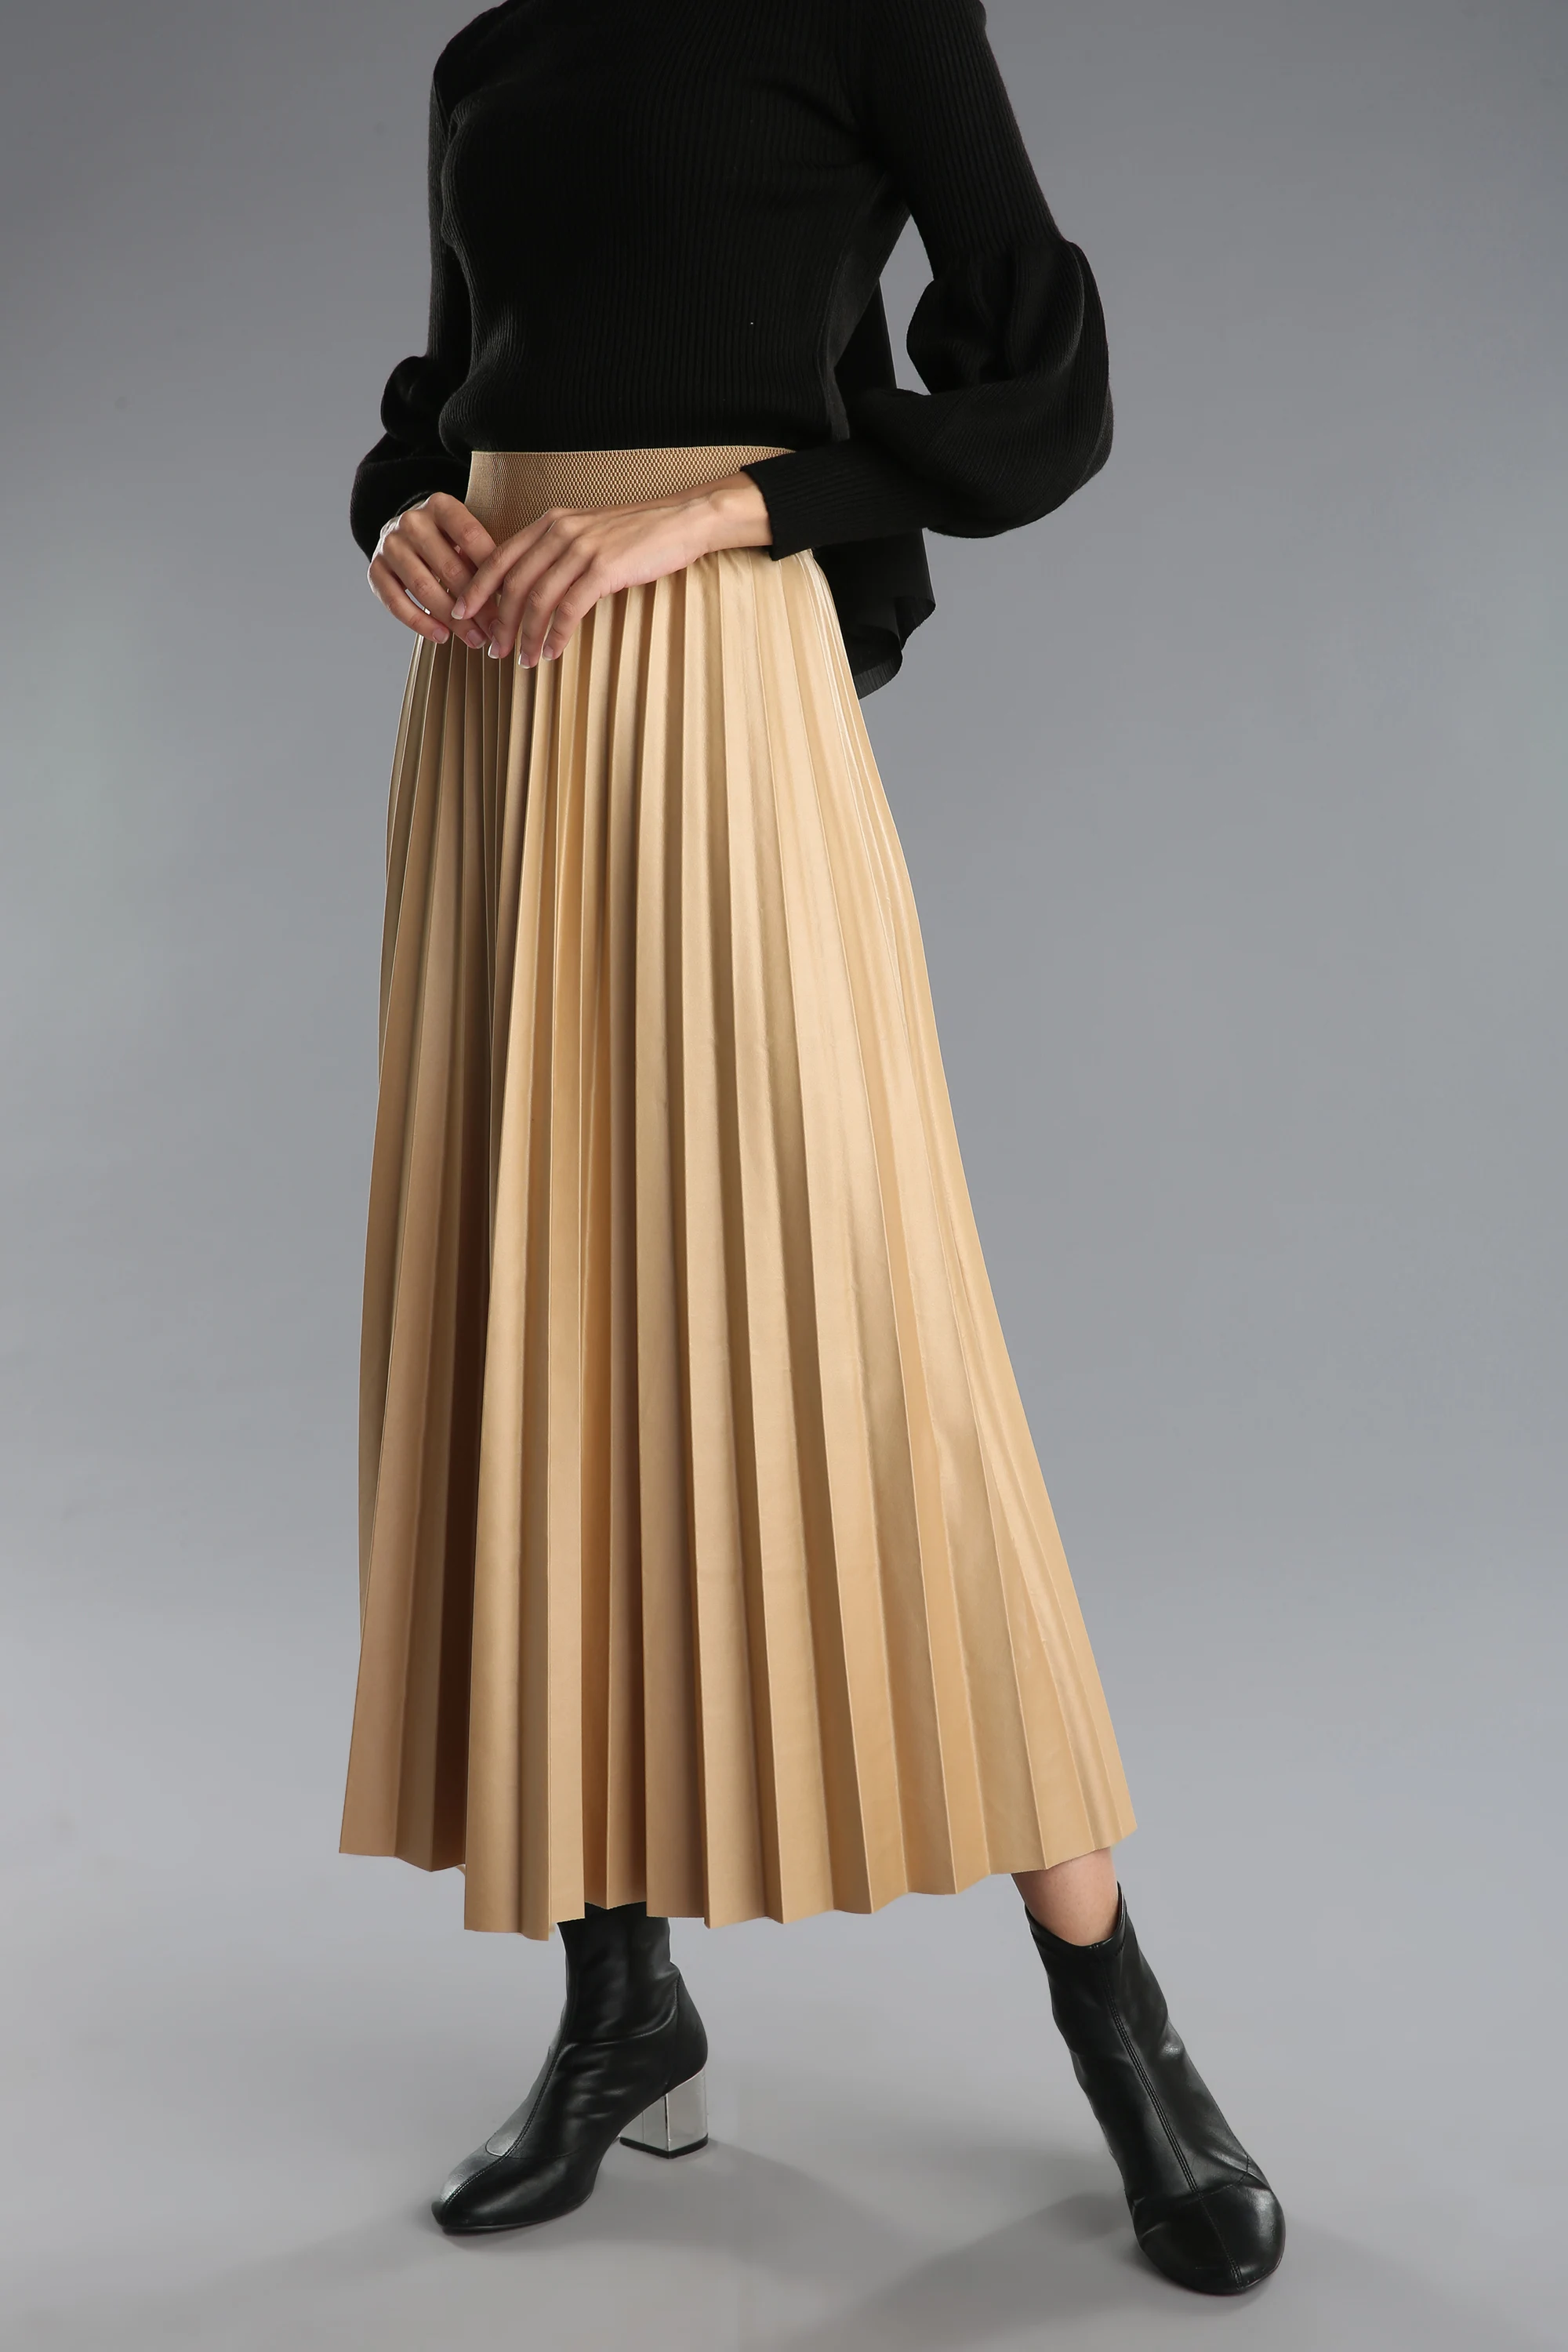 

Kadın giyim Pileli Salaş Etek Muslim Fashion Günlük Şık Özel Gün Eteği Pamuk ve likarlı kumaş 2020 kaliteli rahat kumaş